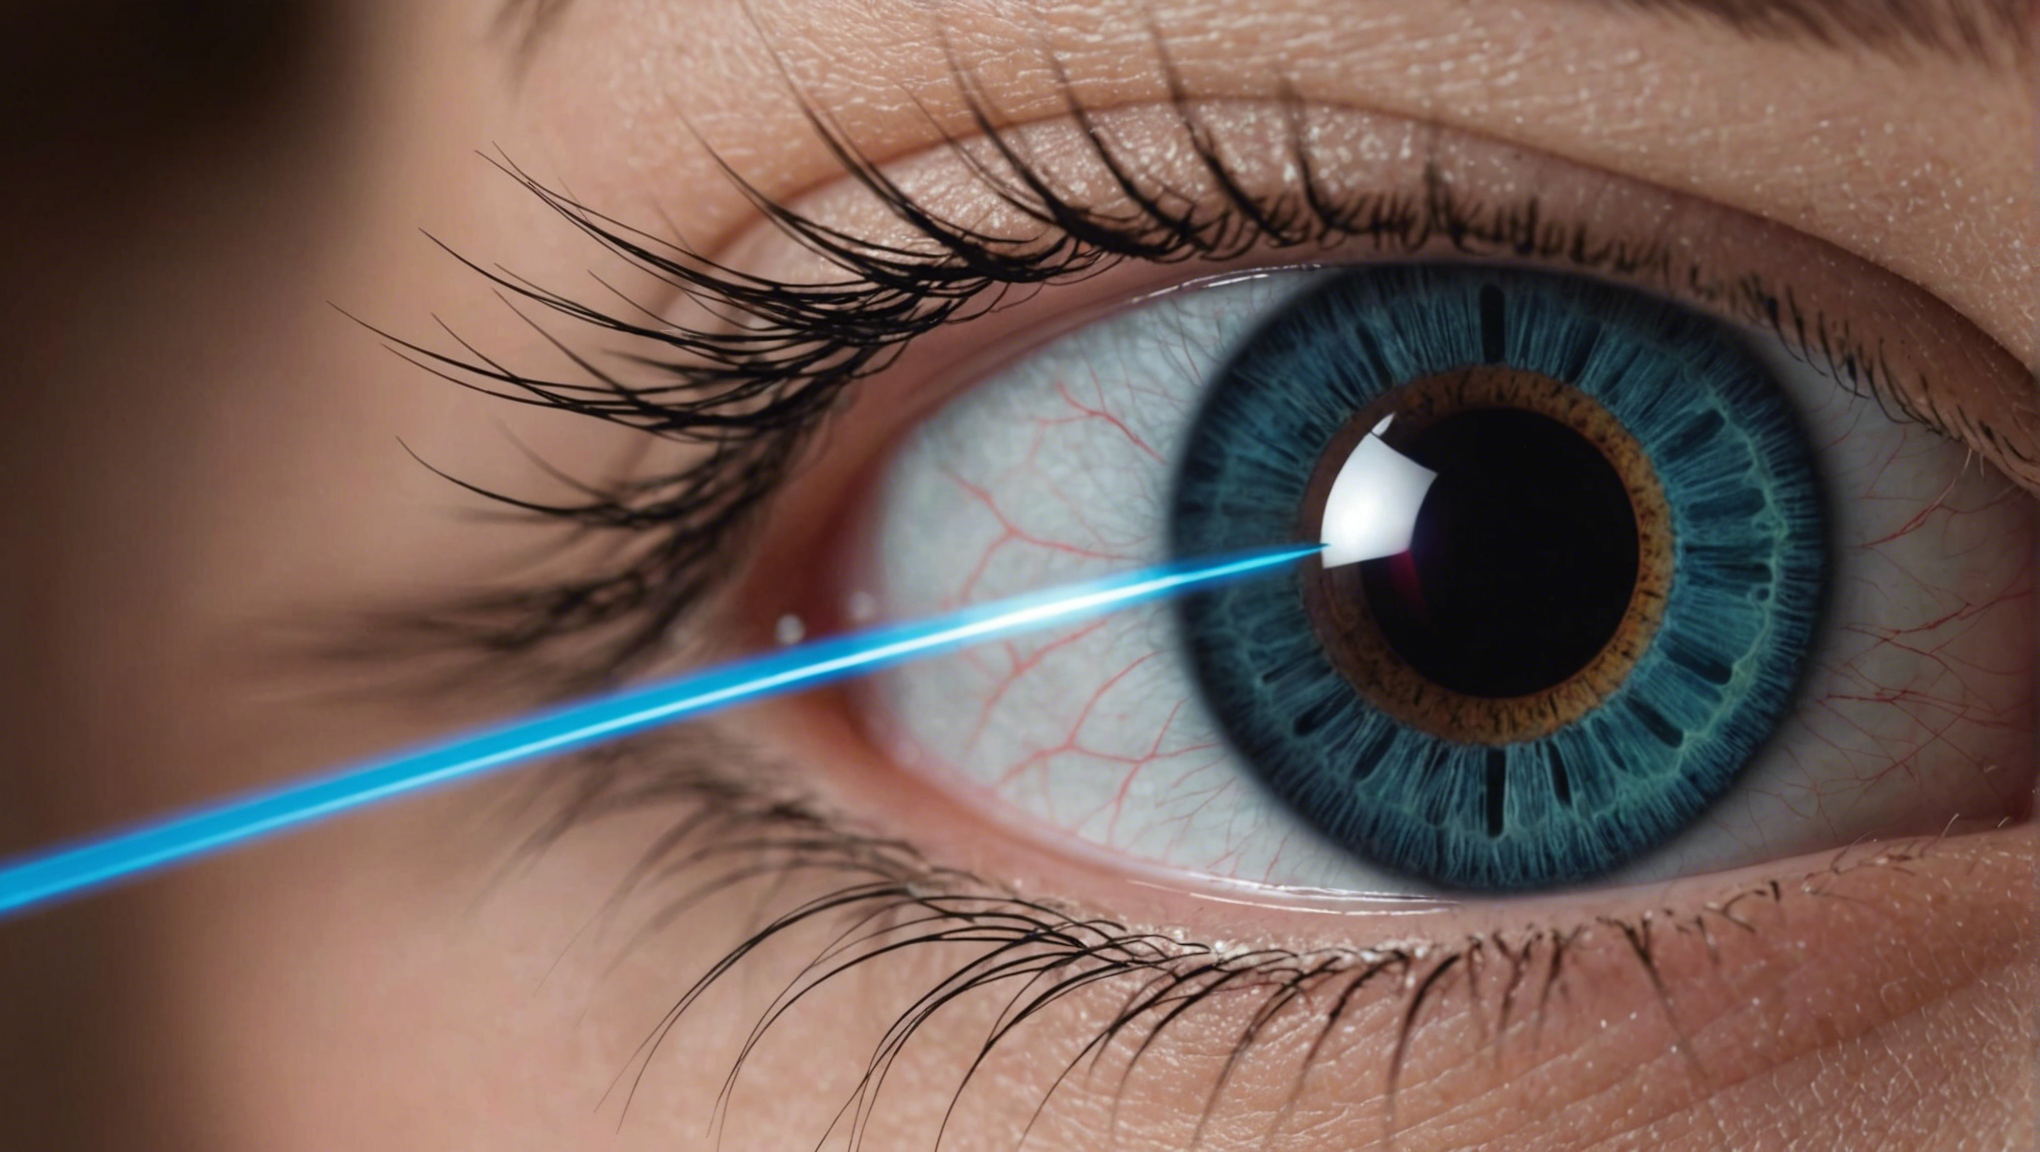 découvrez la chirurgie lasik (laser assistée par un laser excimer en situ) pour corriger la vision. informations sur le traitement, les risques et les bénéfices.